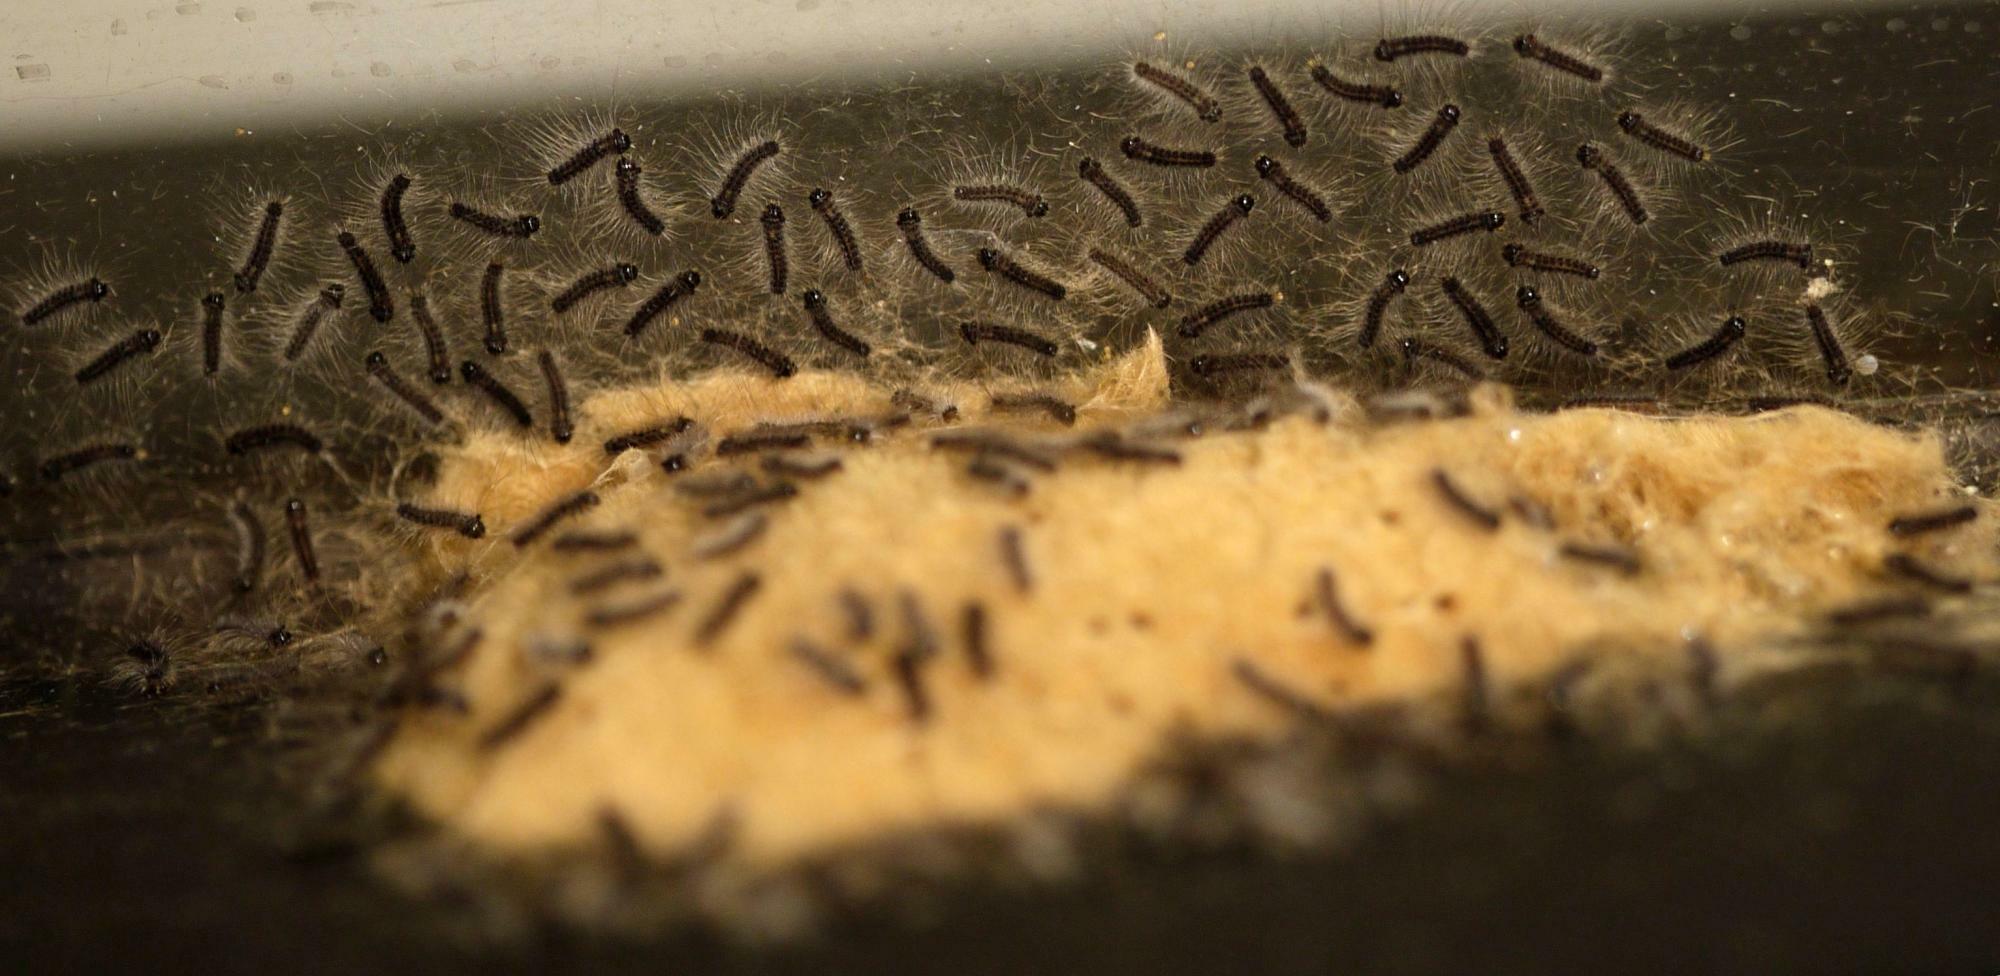 孵化直後のマイマイガの幼虫。ブランコ毛虫と呼ばれるこの段階の幼虫には毒があるという。薄茶色のものが鱗毛に覆われた卵塊。